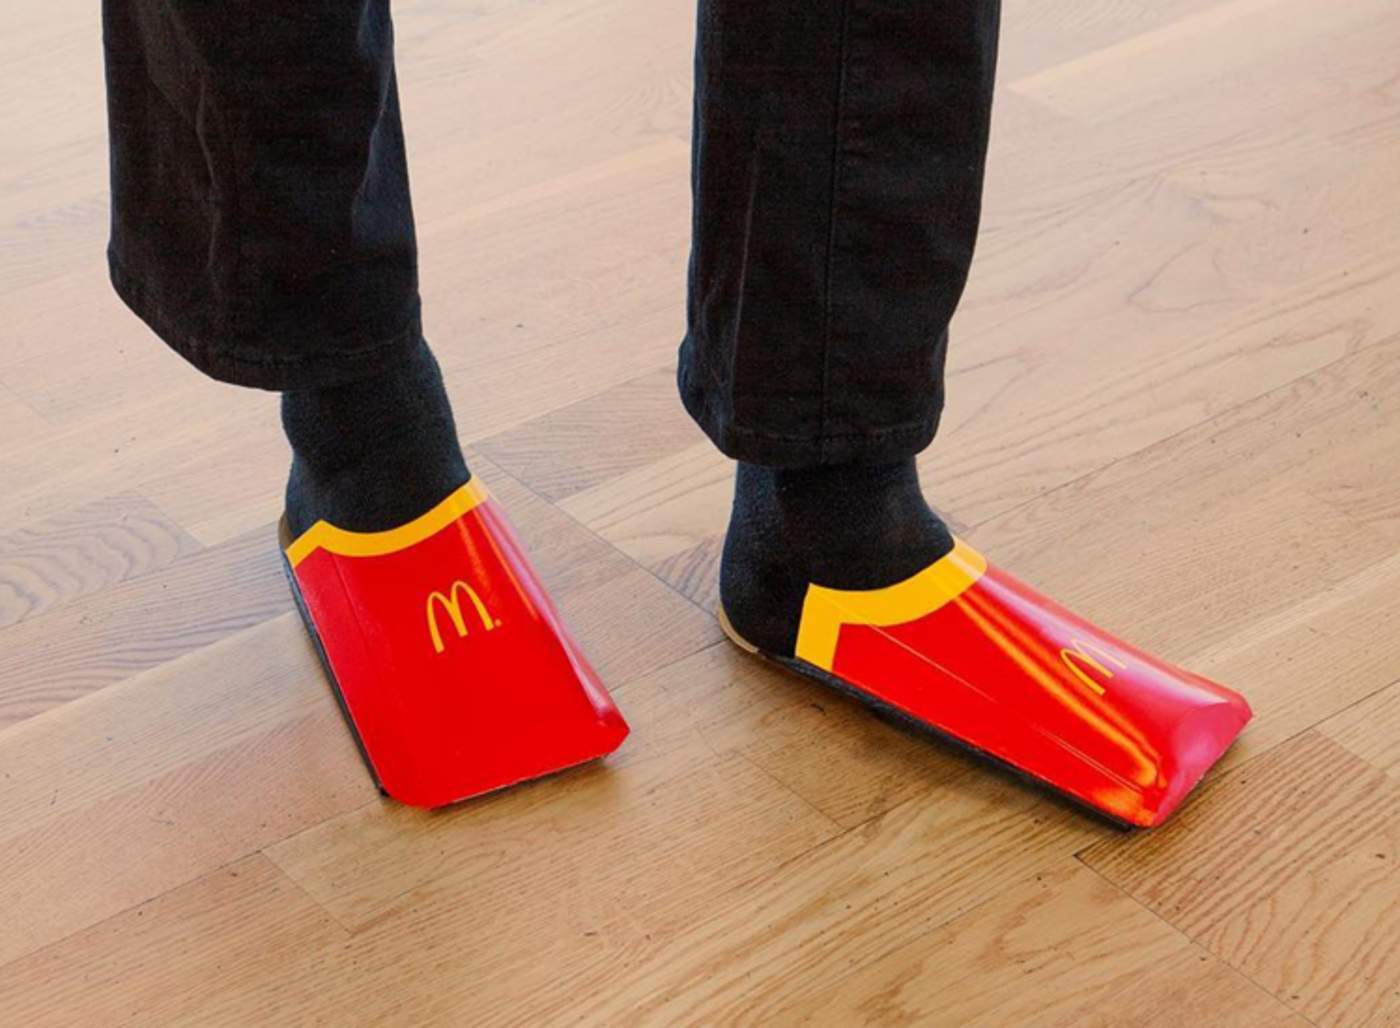 Cadena de comida rápida se burla de diseño de zapatos